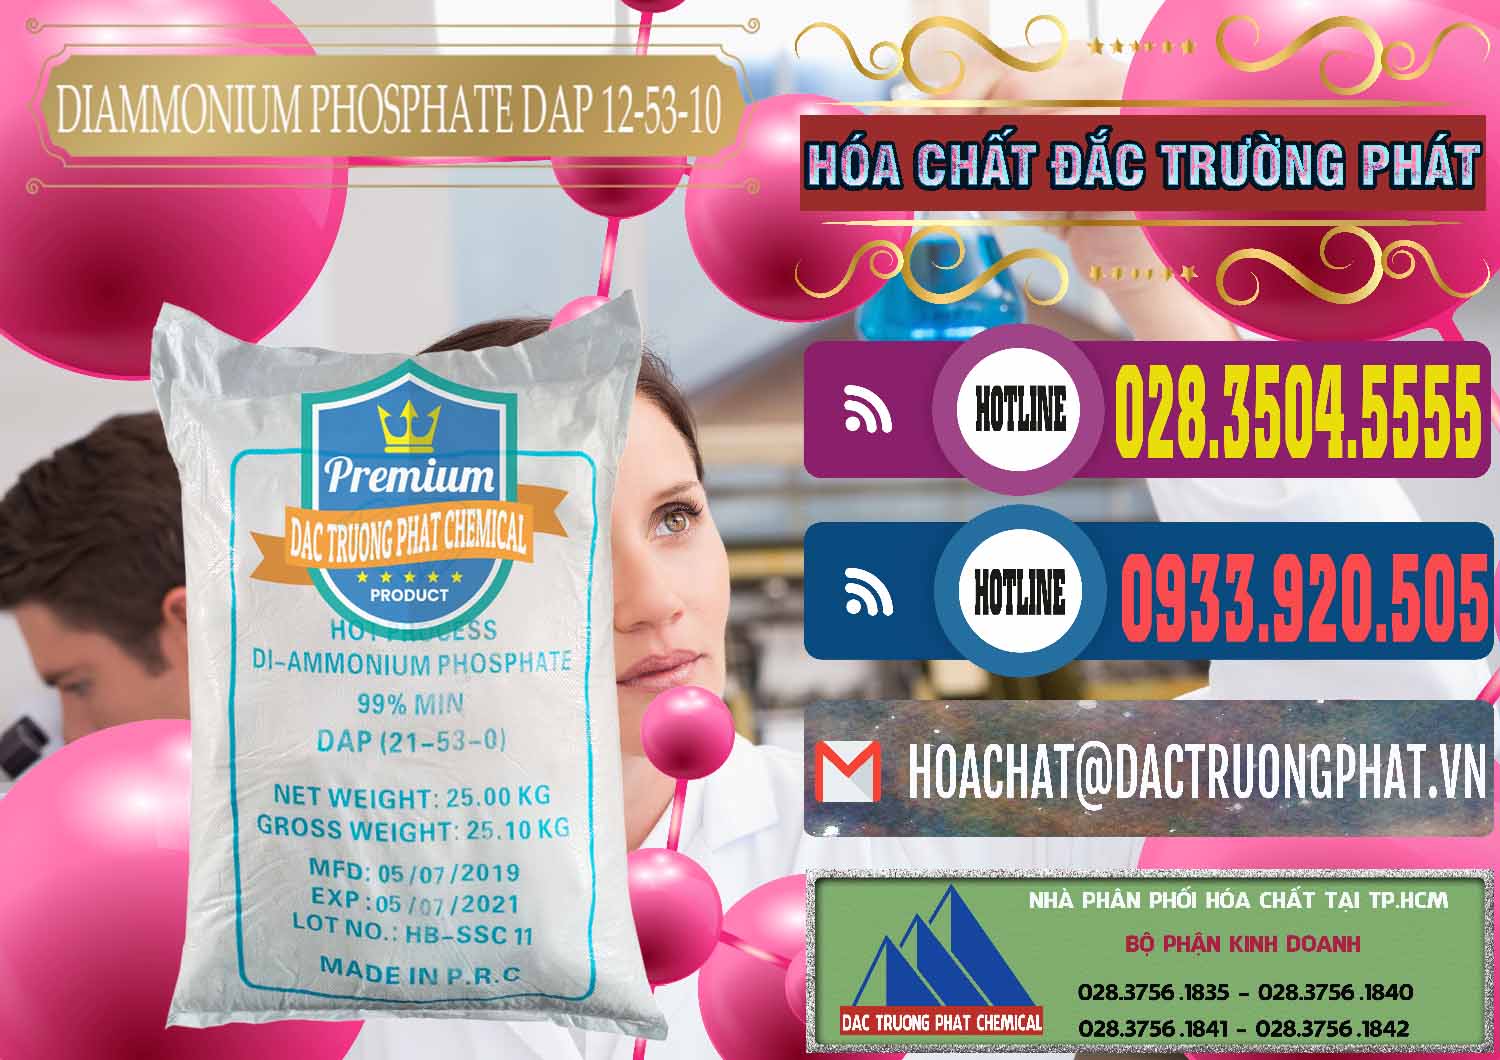 Nơi cung ứng và bán DAP - Diammonium Phosphate Trung Quốc China - 0319 - Công ty chuyên cung cấp và nhập khẩu hóa chất tại TP.HCM - muabanhoachat.com.vn